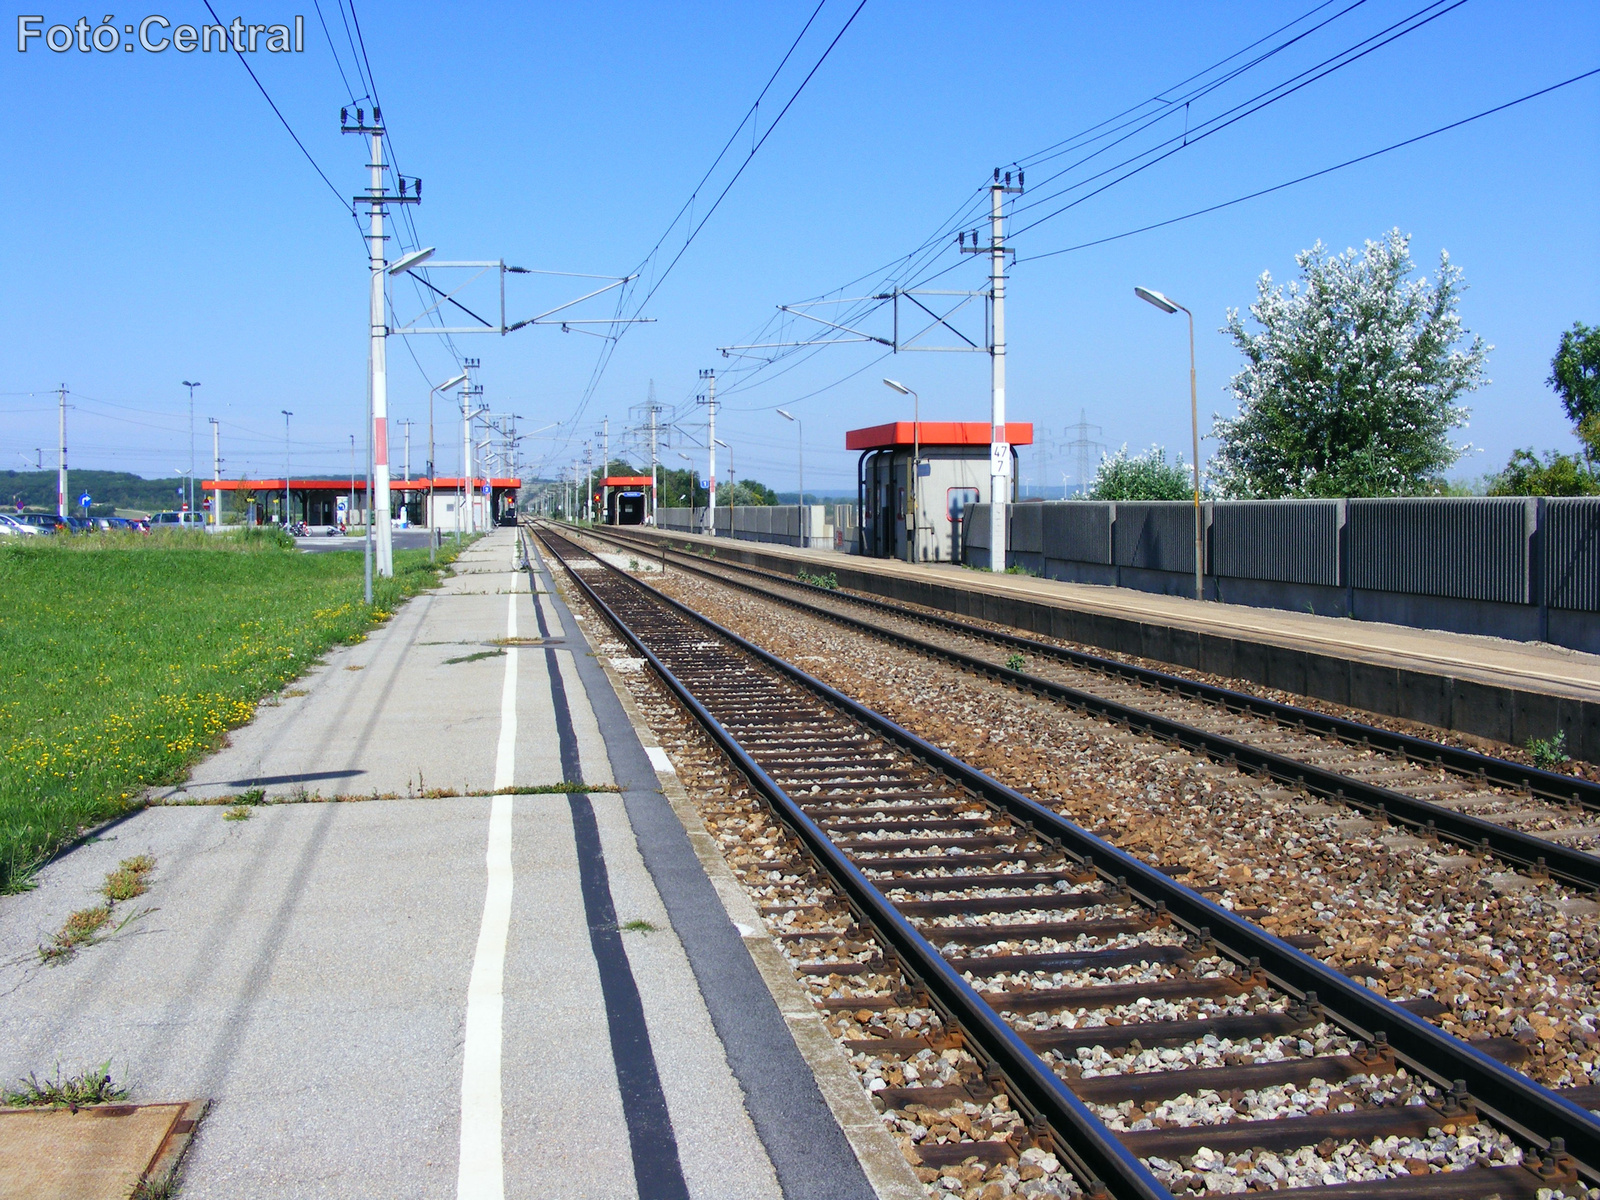 A Budapest-Hegyeshalom-Bruck-Királyhida-Wien vonal (2.számú vágá